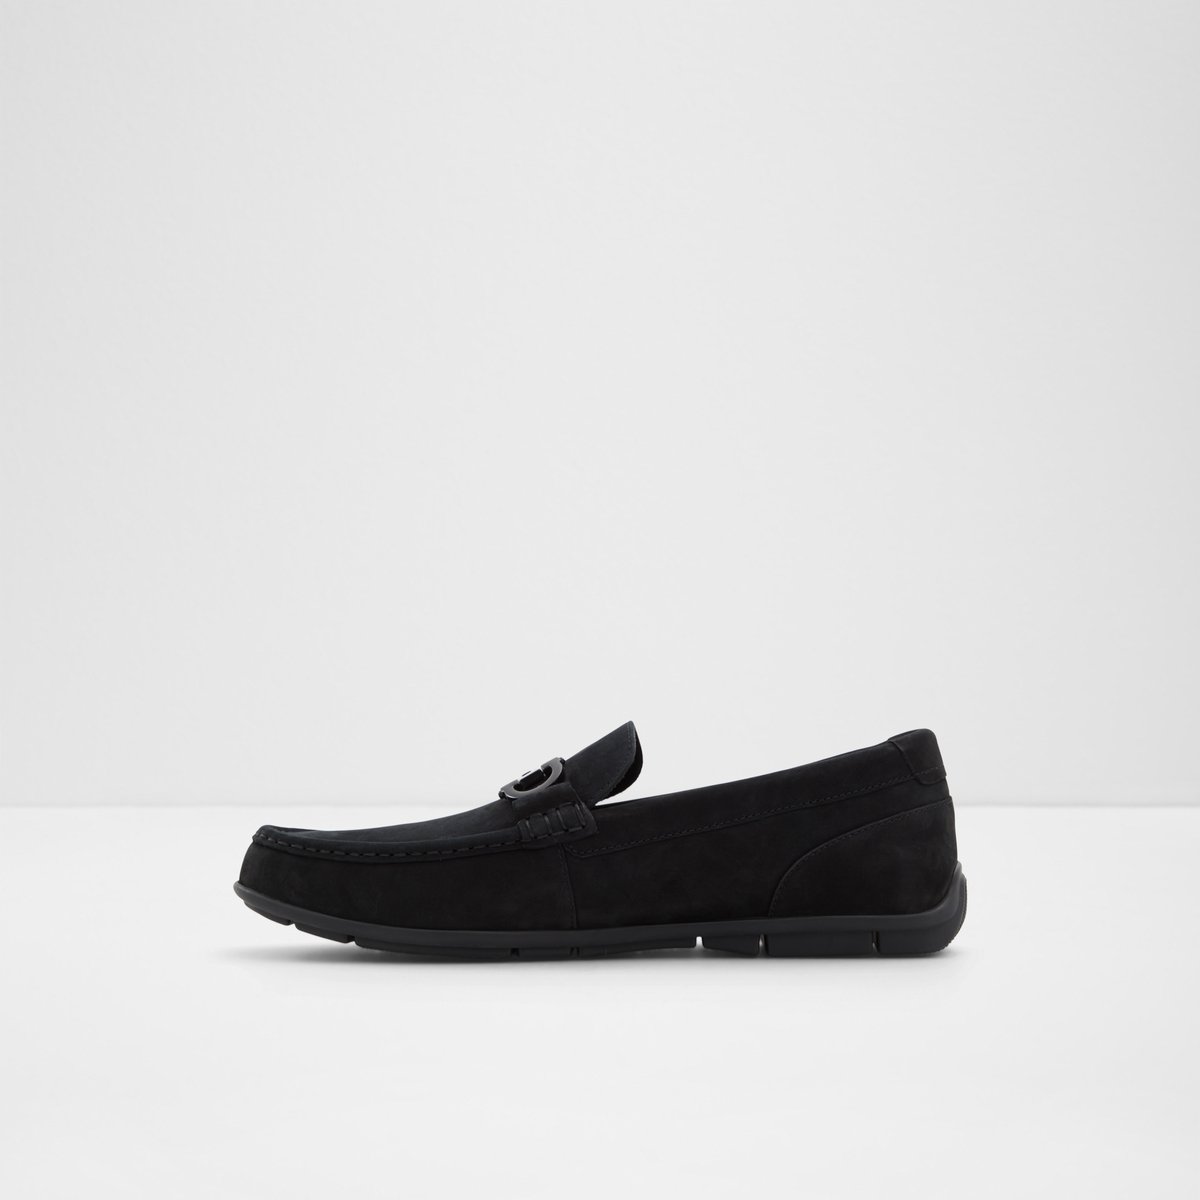 Orlovoflex Black Men's Casual Shoes | ALDO Canada